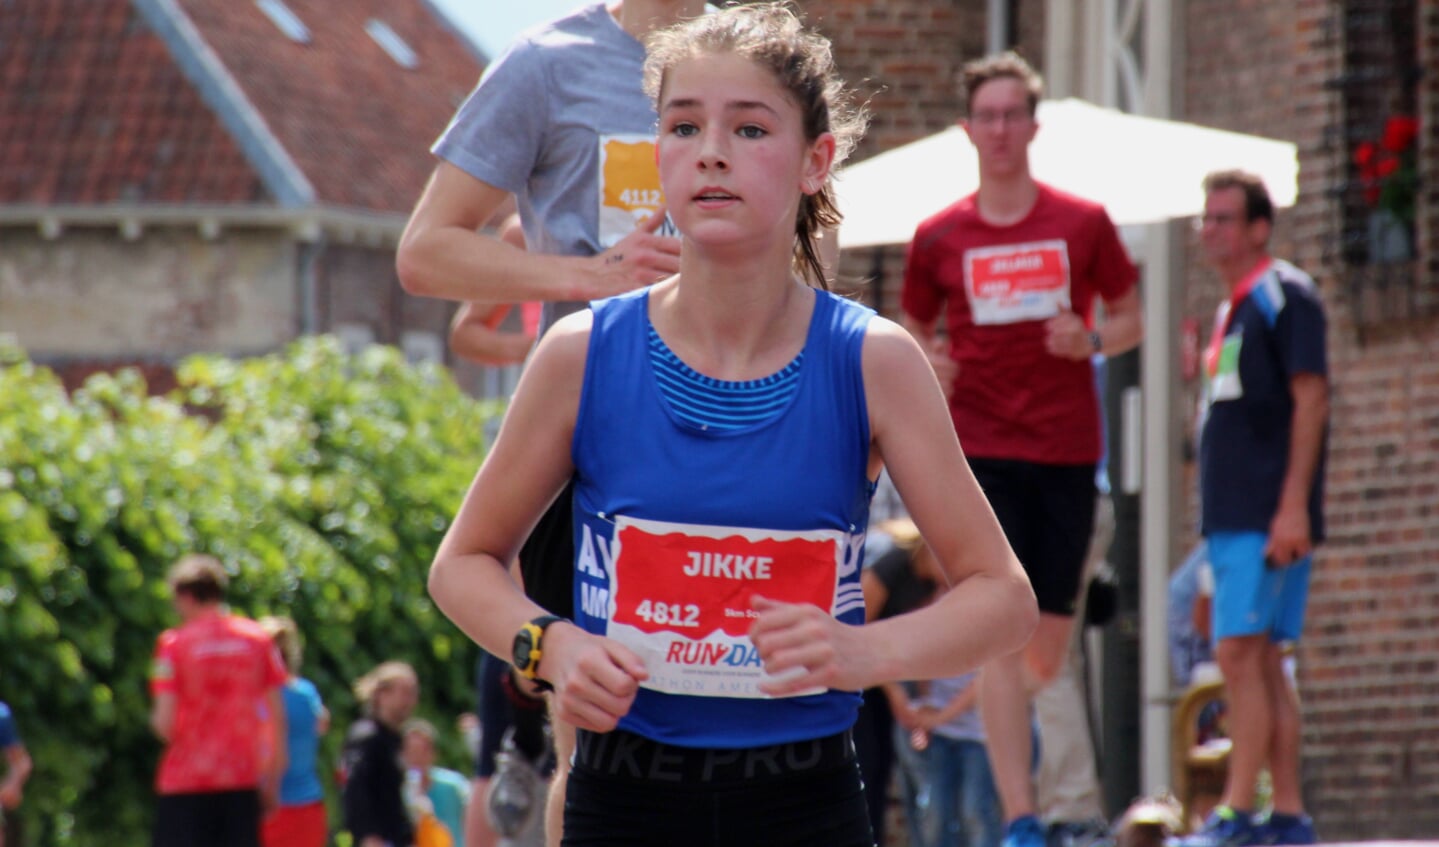 Jikke van der Ploeg (Nieuwe Eemland) werd derde overall tijdens MSA 5 kilometer.